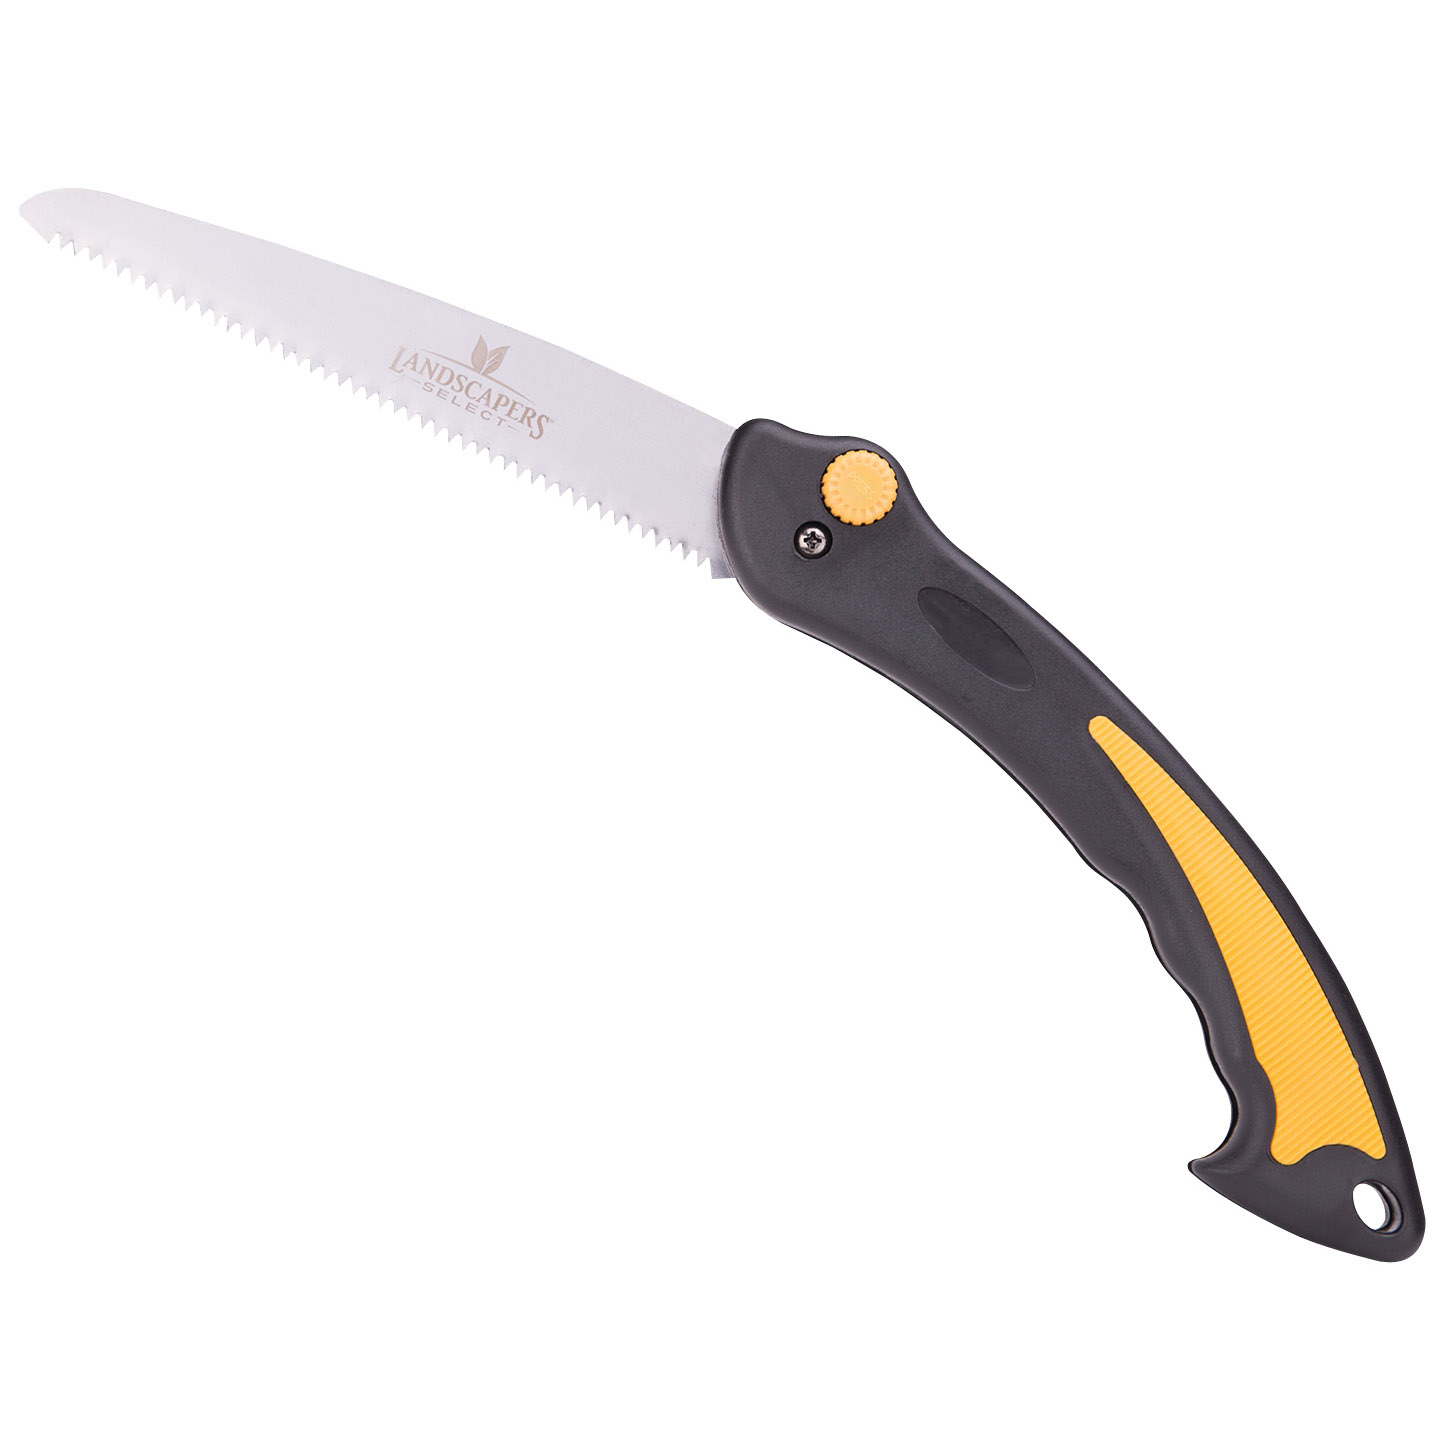 FL81-180F Pruning Saw, Steel Blade, 8 TPI, TPR Handle